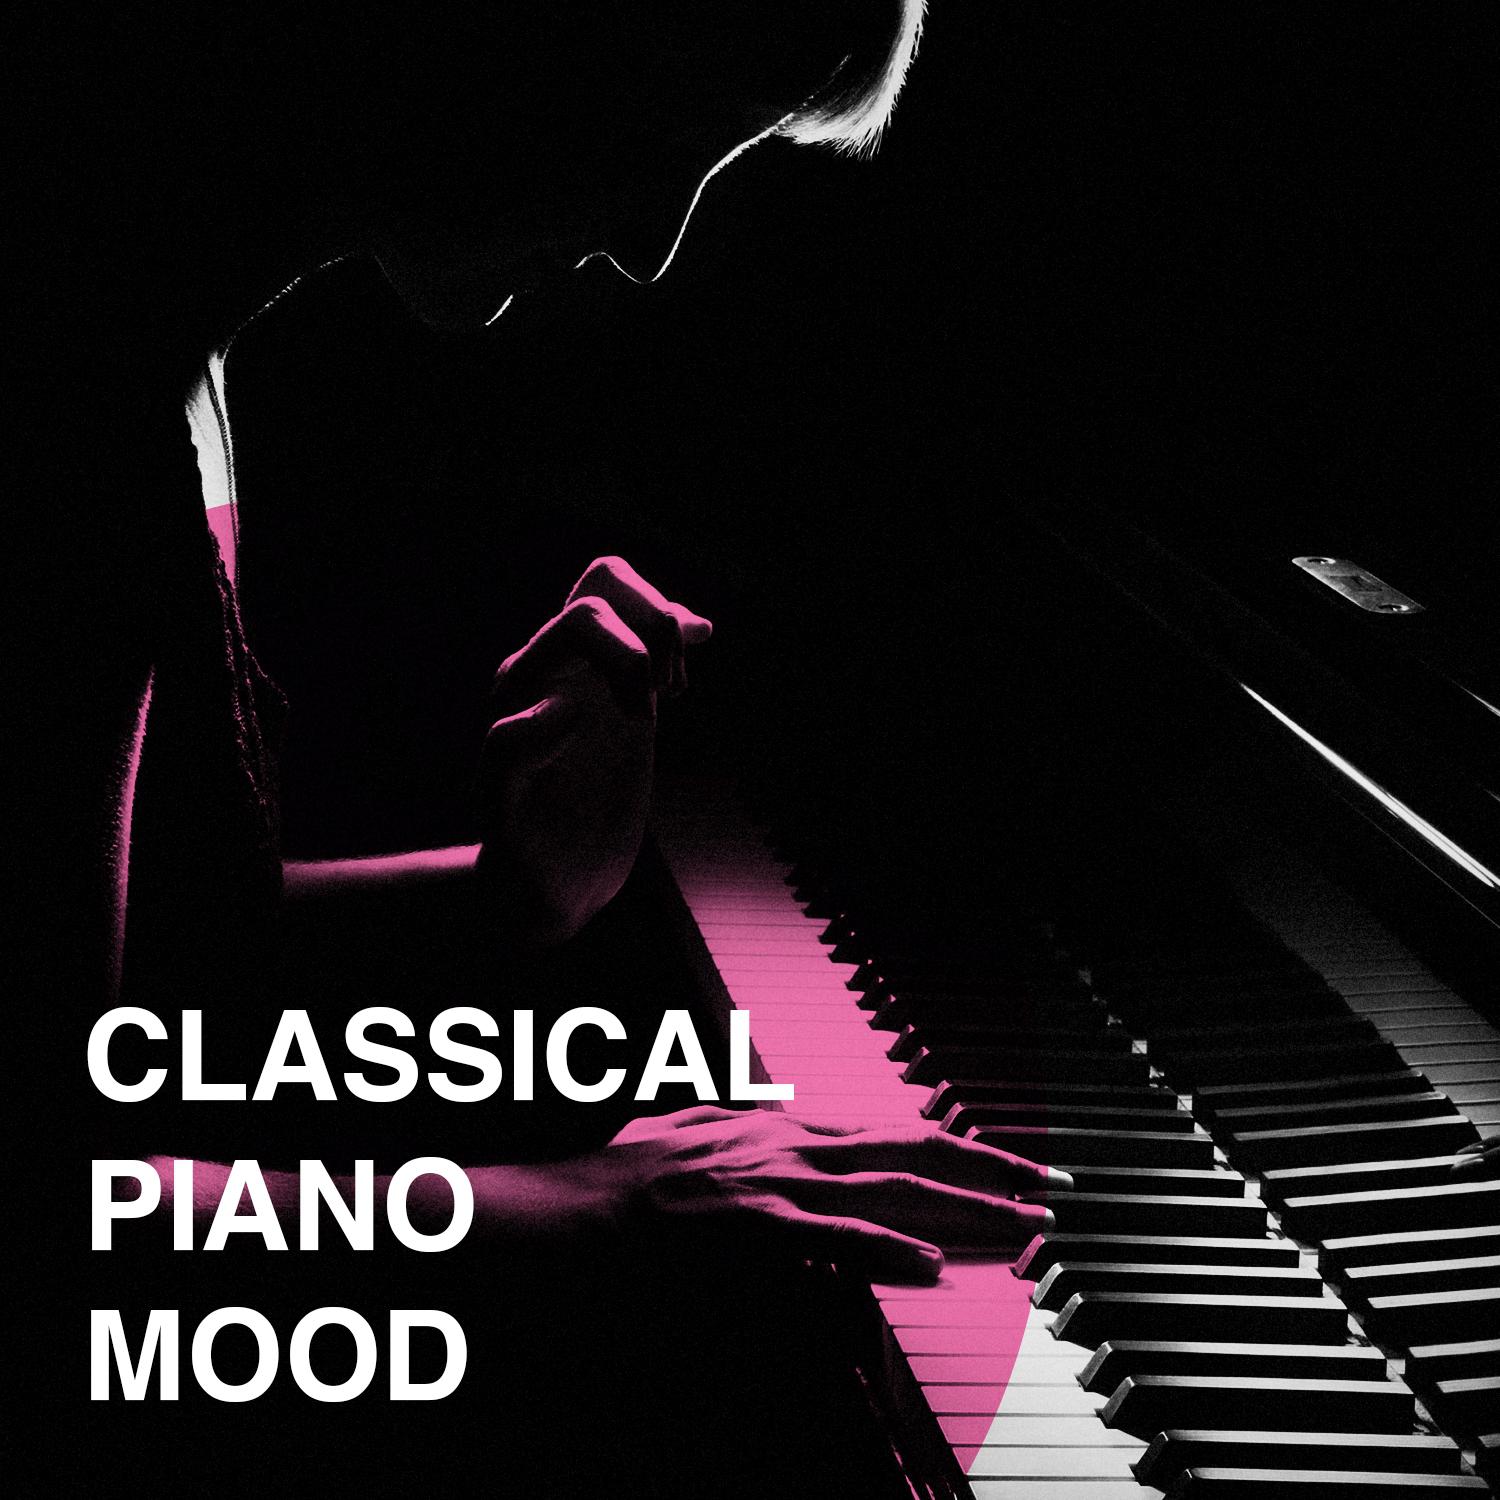 Nocturne no. 2 in e-flat major, op. 9 no. 2歌词 歌手Sandor Falvai-专辑Classical Piano Mood-单曲《Nocturne no. 2 in e-flat major, op. 9 no. 2》LRC歌词下载